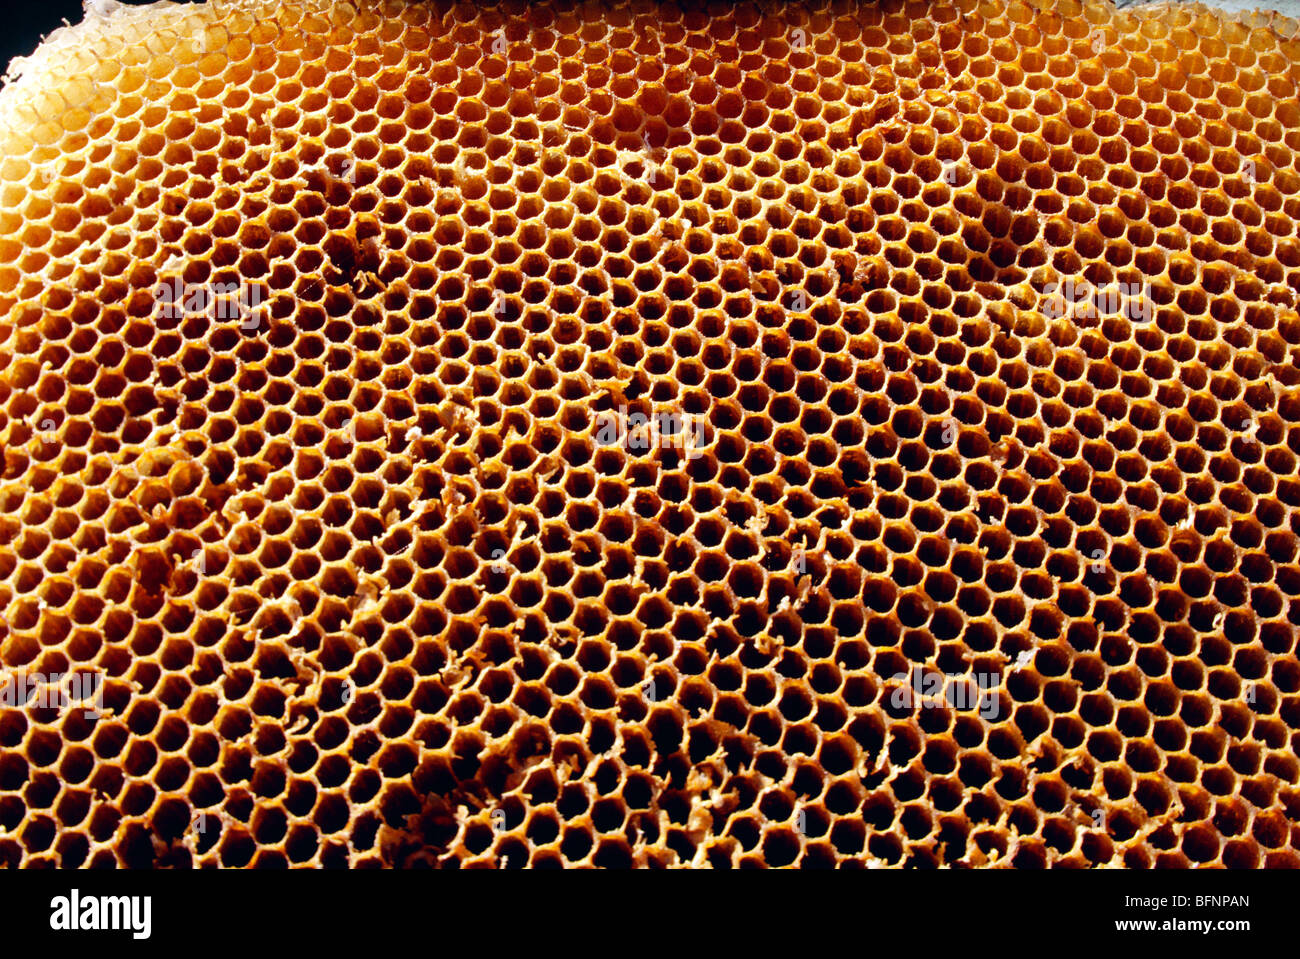 ruche d'abeilles ; ruche ; cellules de cire prismatique hexagonale en nid d'abeilles Banque D'Images